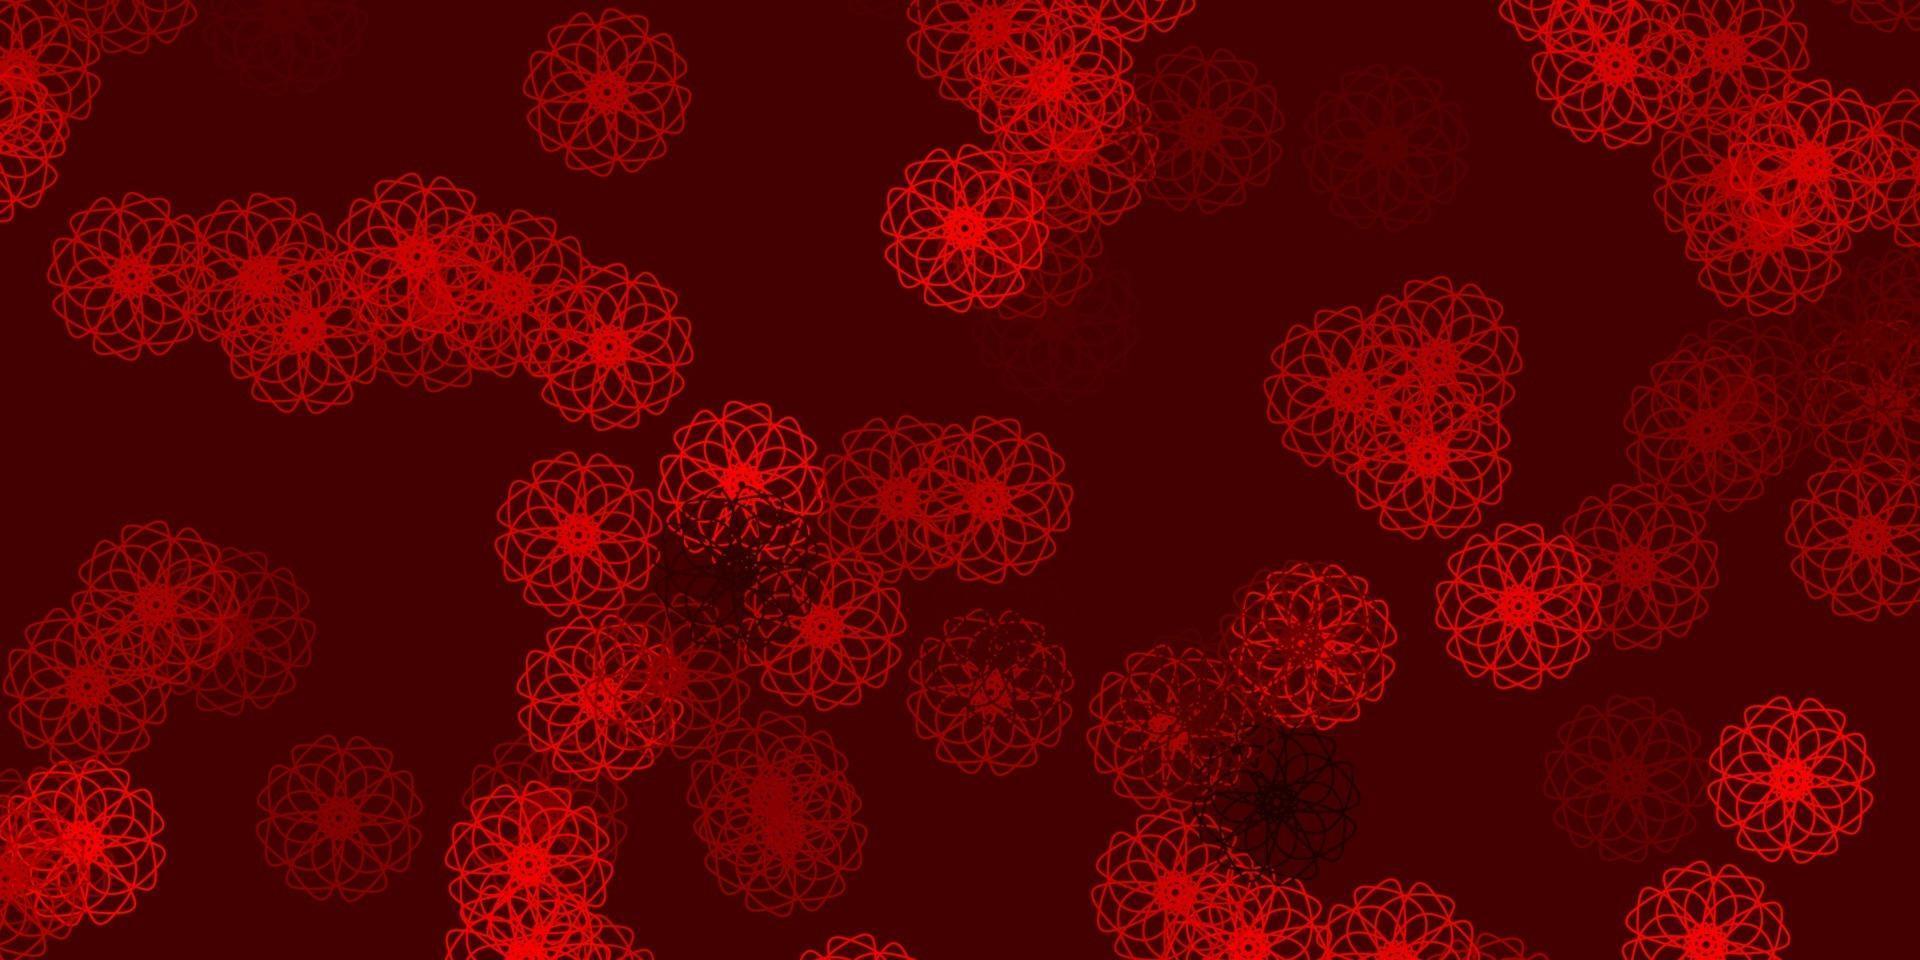 trama di doodle vettoriale rosso chiaro con fiori.